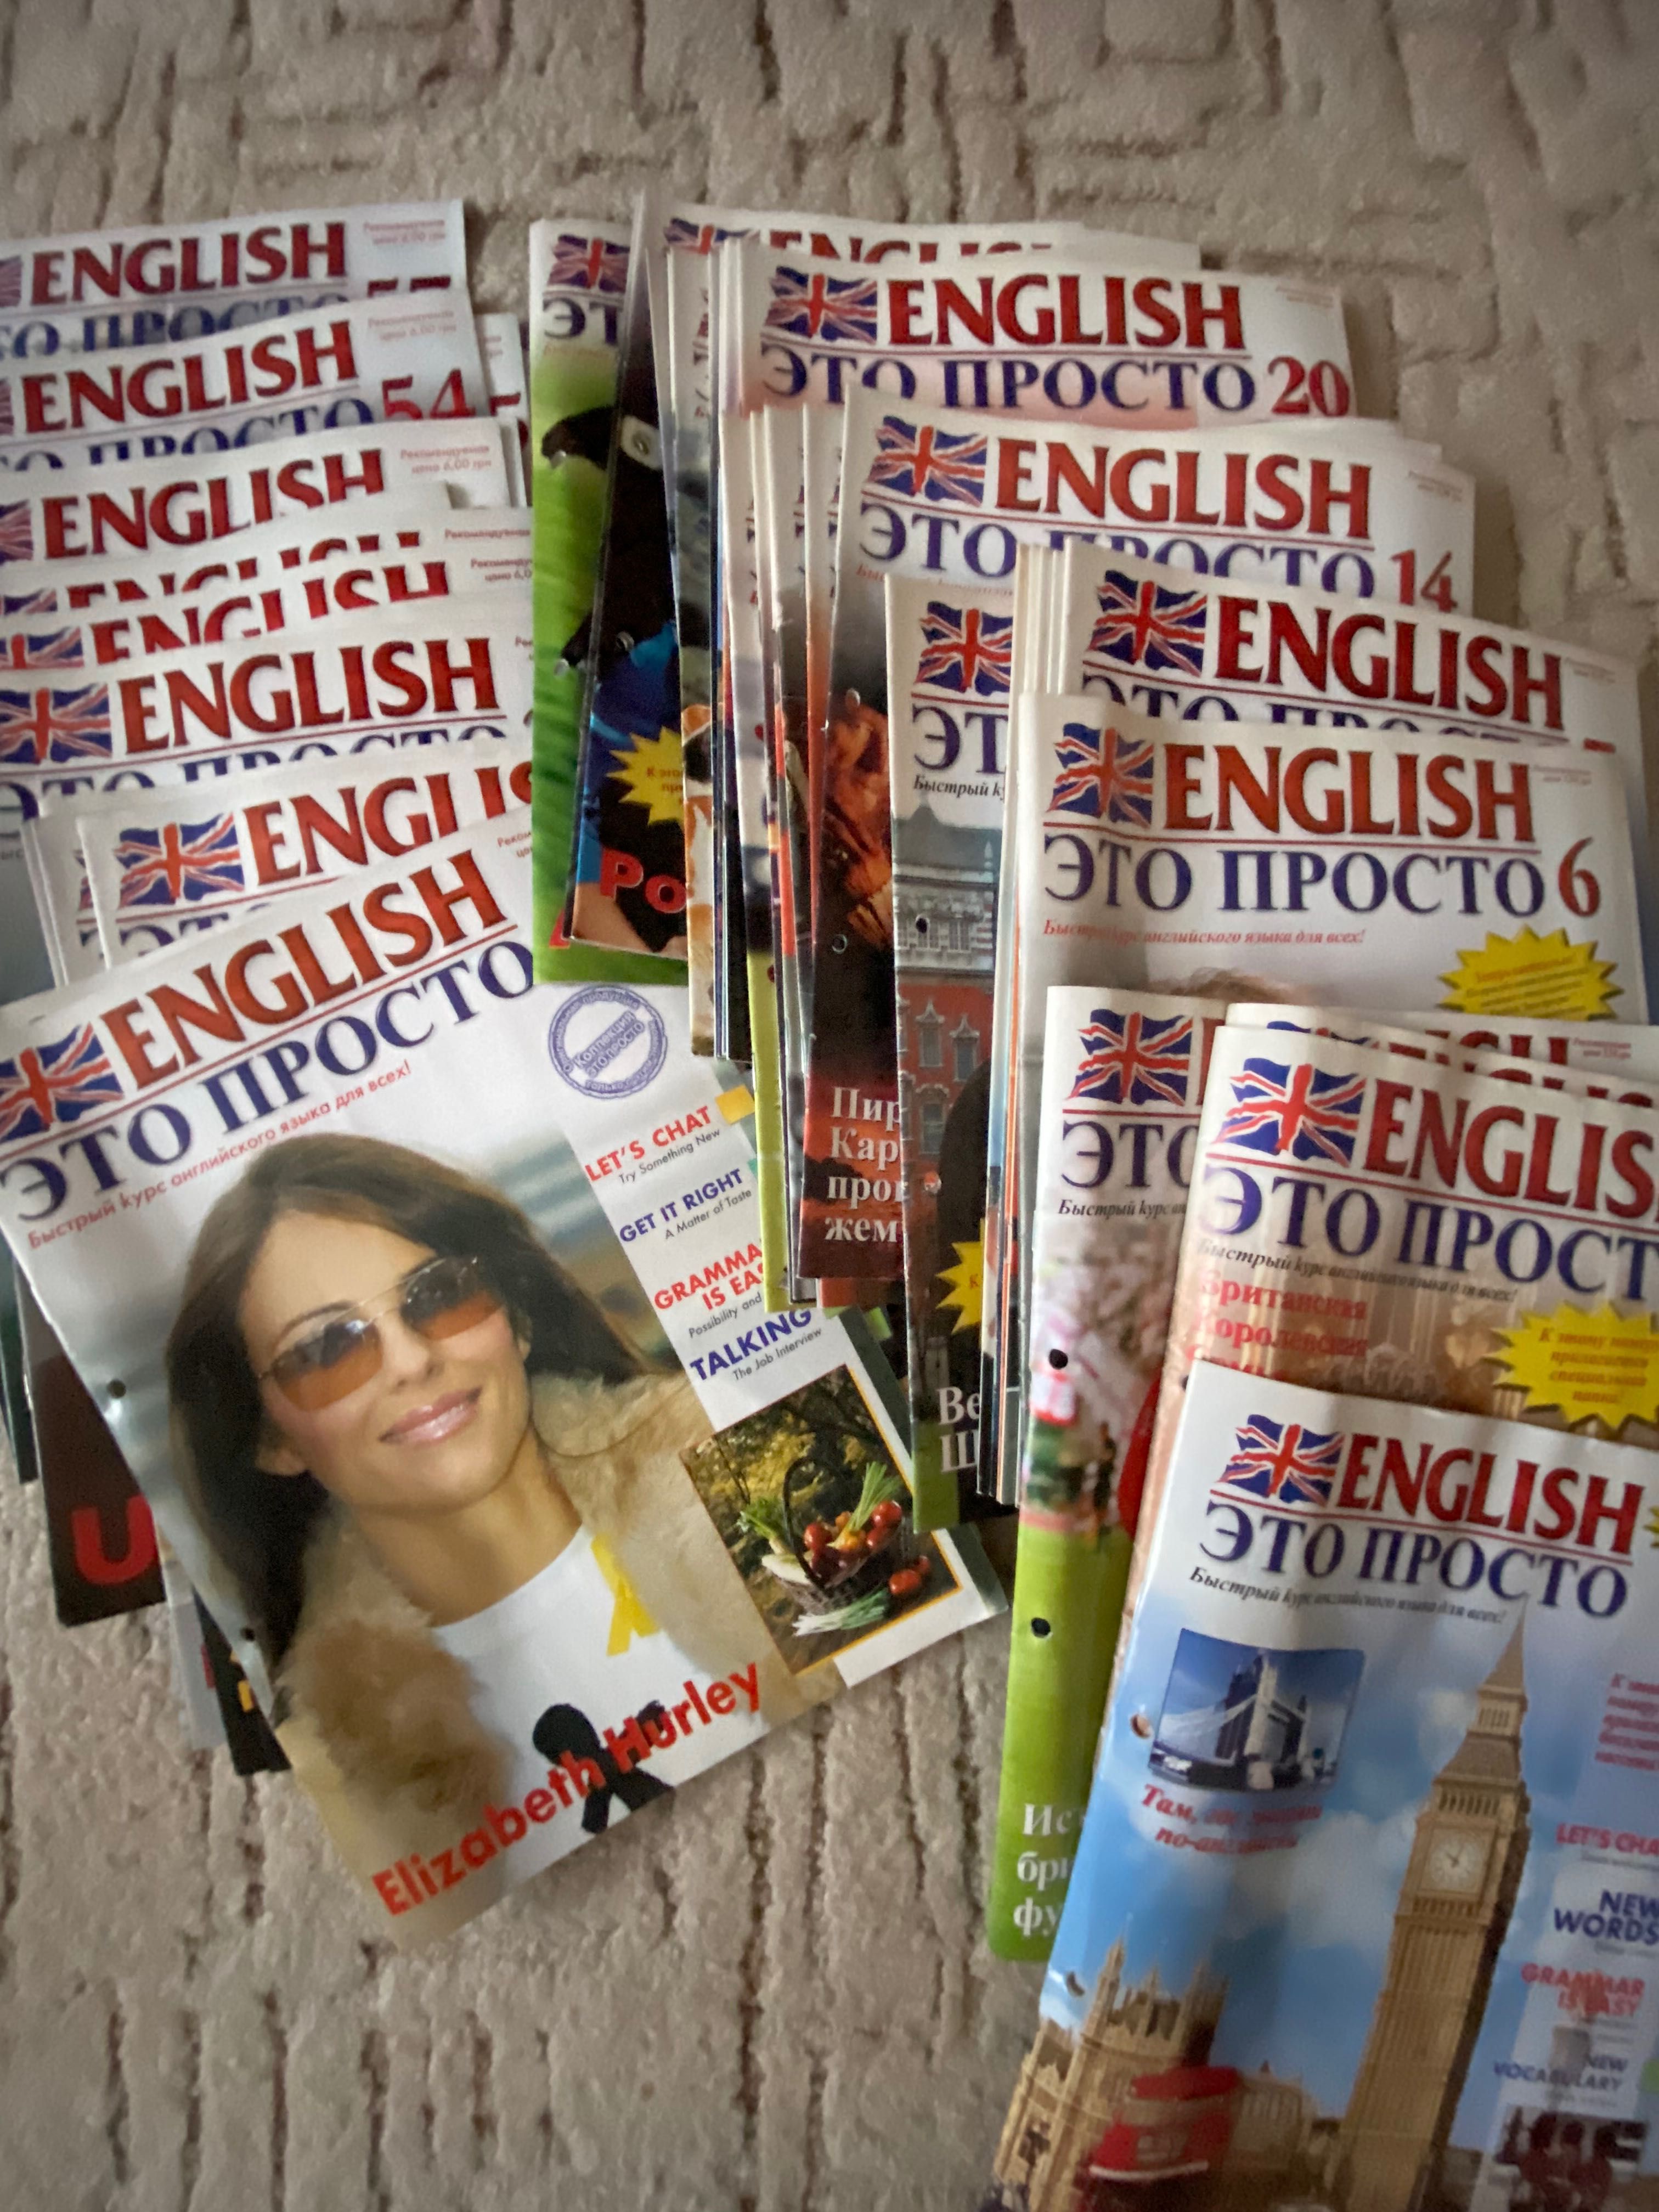 English / журналы для изучения английского языка (53 журнала)